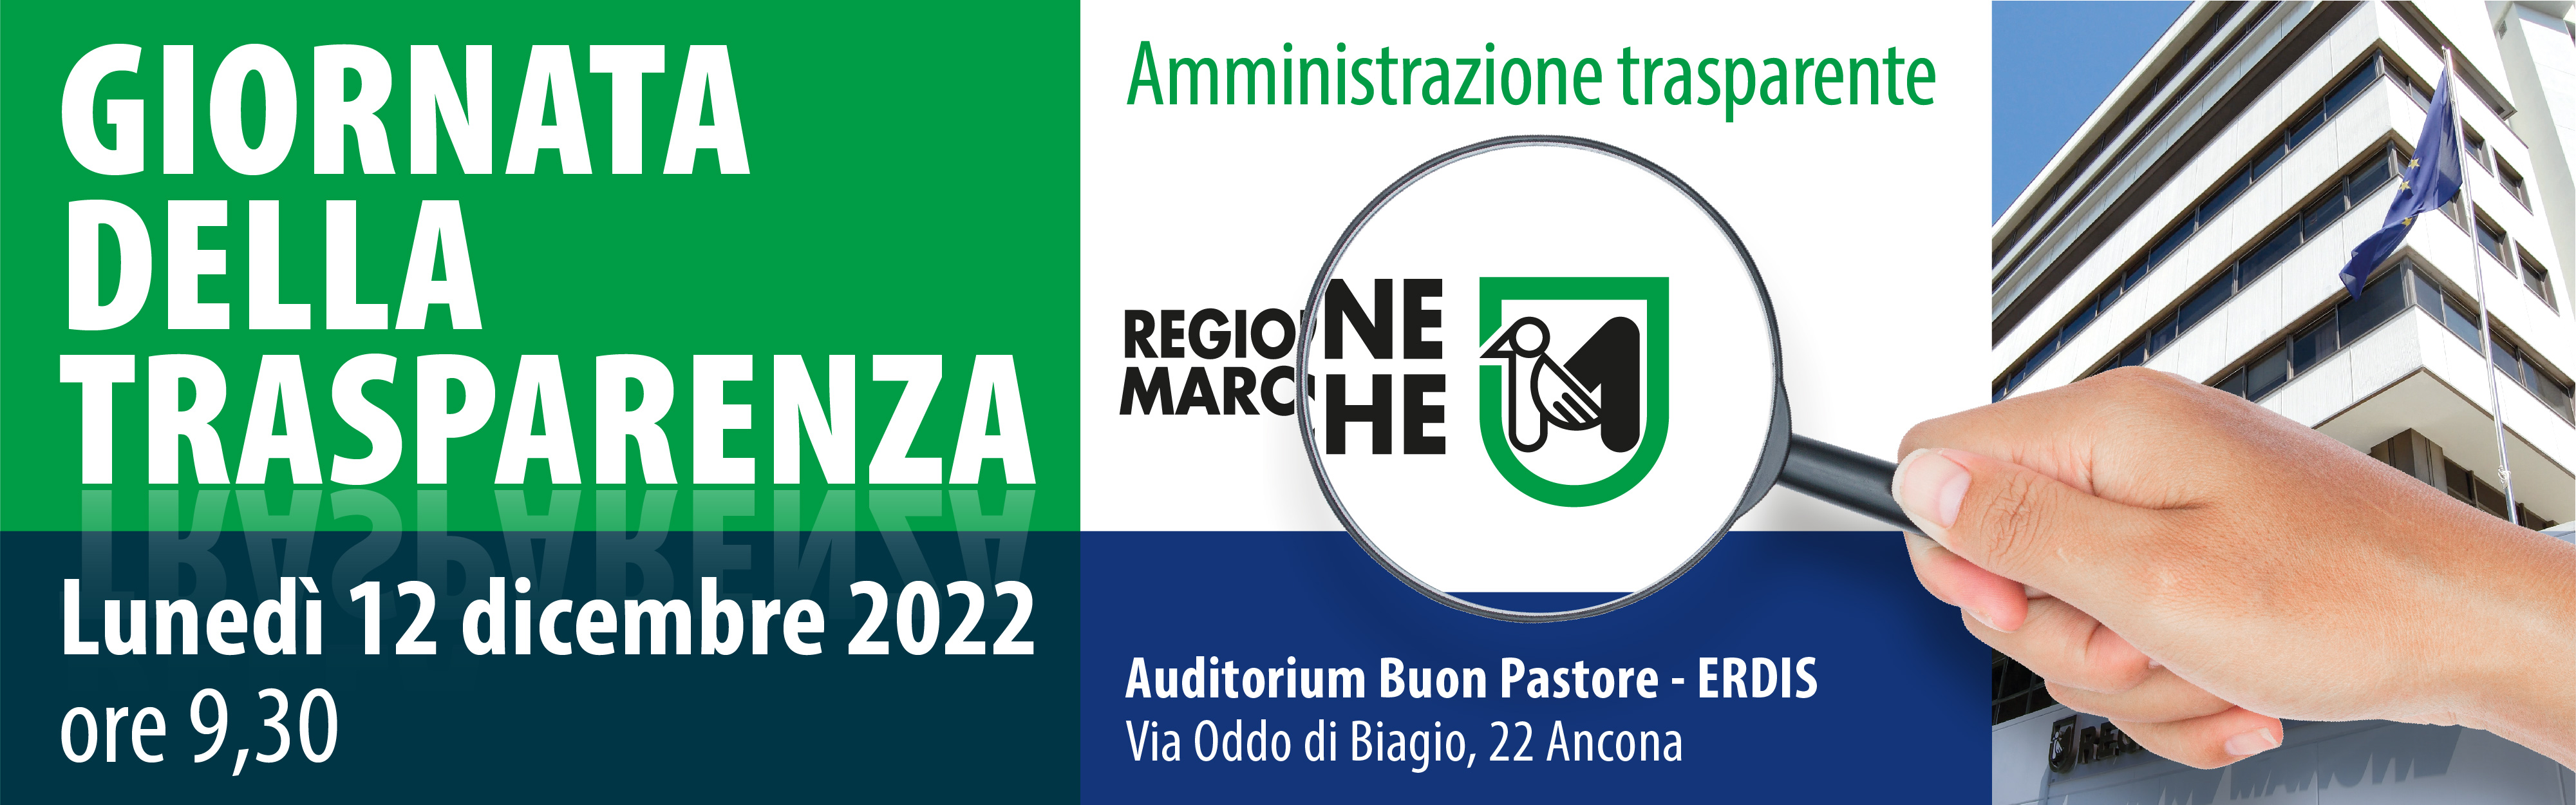 Giornata della Trasparenza 2022 - Ancona, Auditorium Buon Pastore - ERDIS, Lunedì 12 dicembre ore 9,30